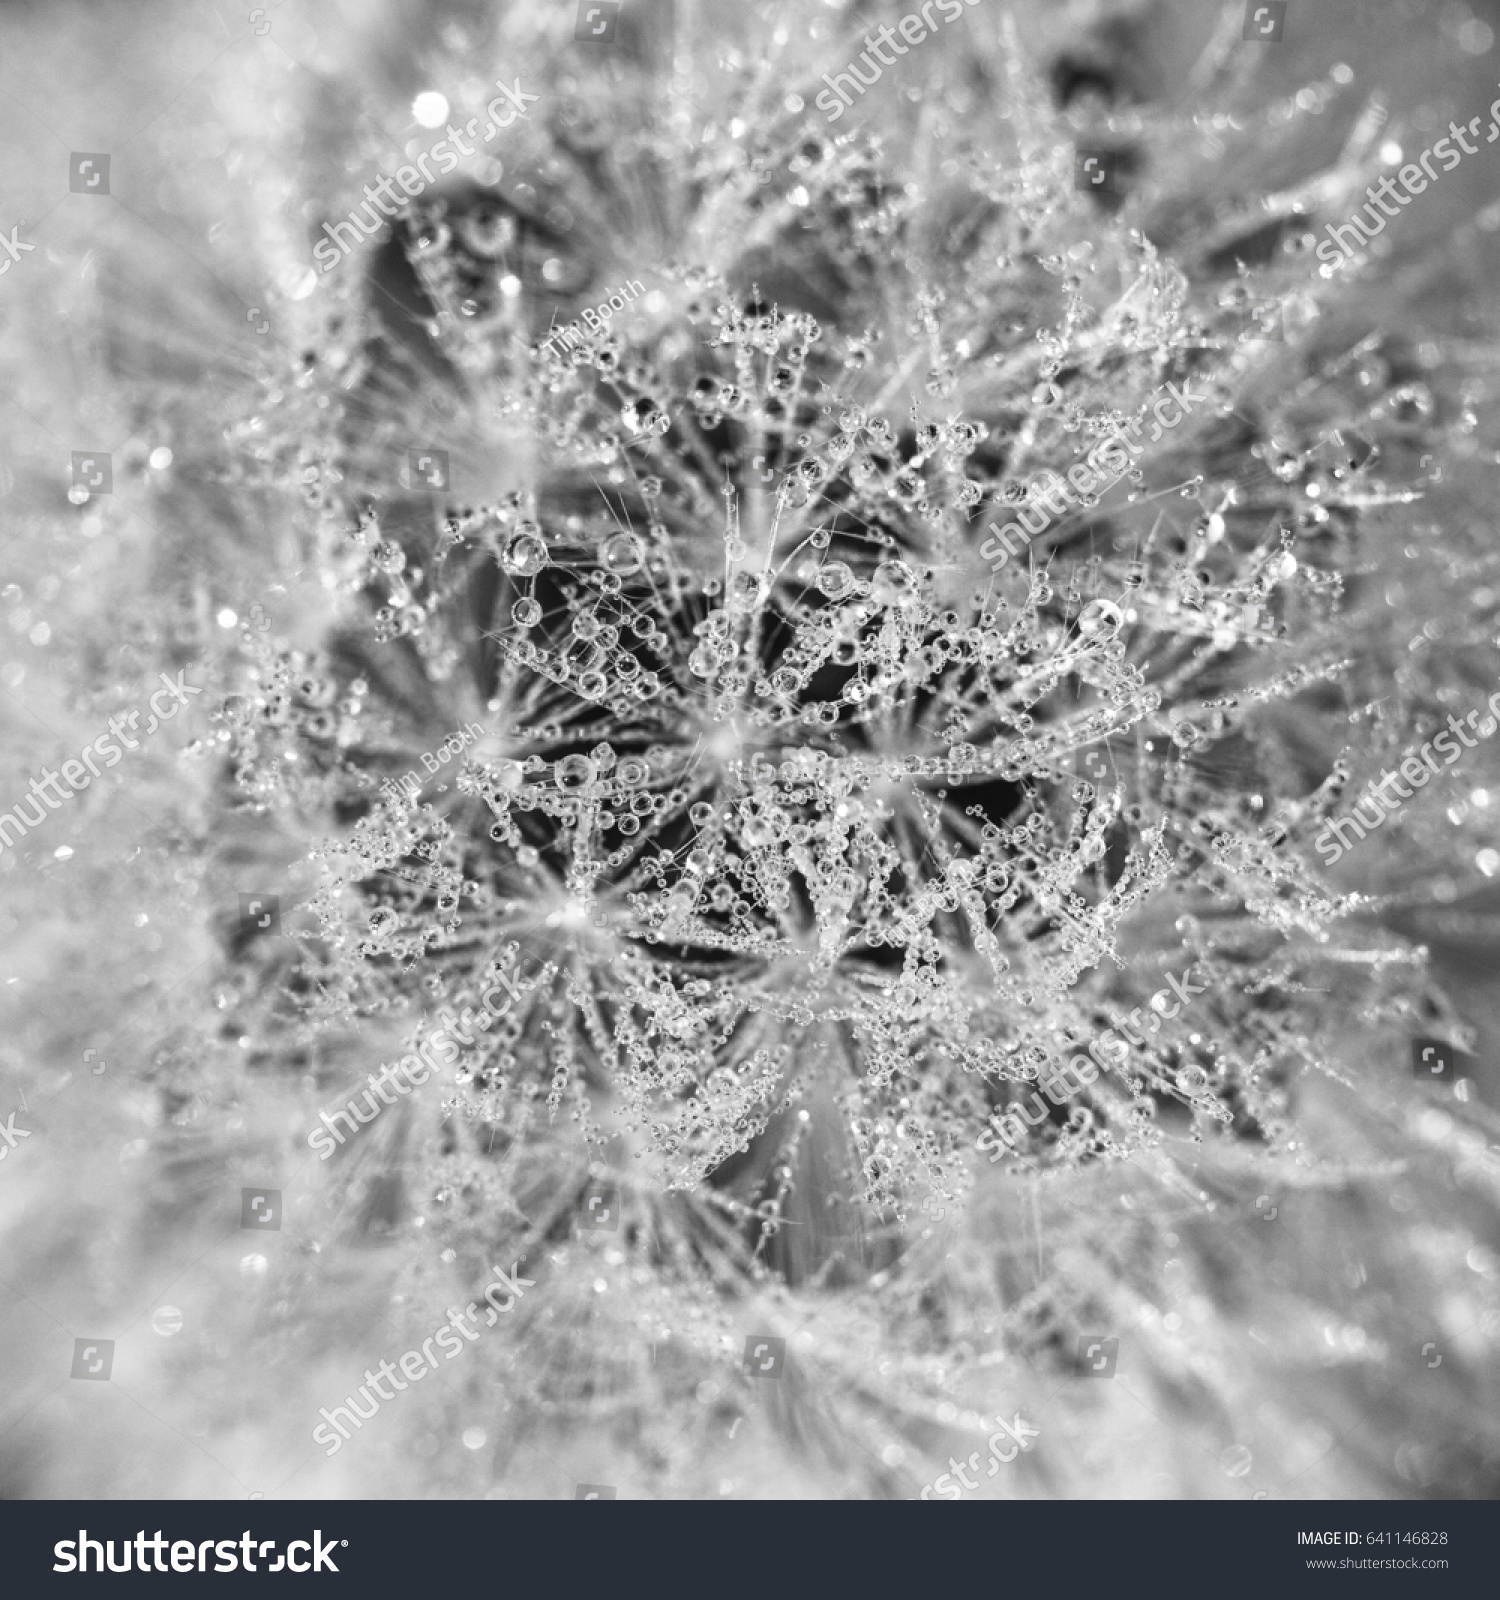 Macro Dew Drops On Dandelion Head Stock Photo 641146828 - Shutterstock